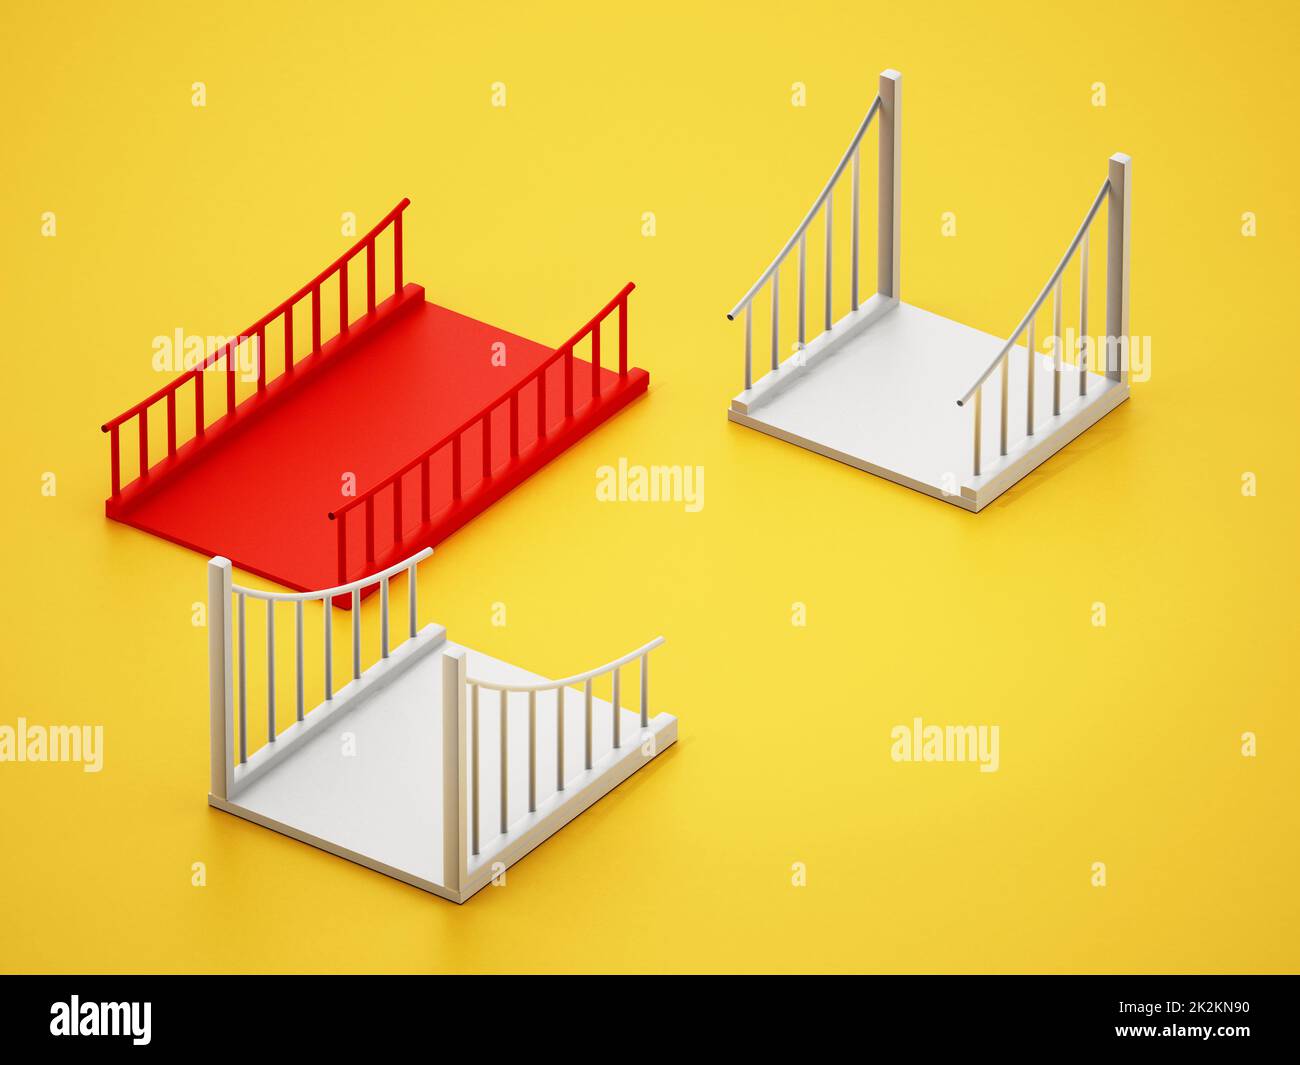 Red bridge part fitting white parts. Building bridges concept. 3D illustration Stock Photo